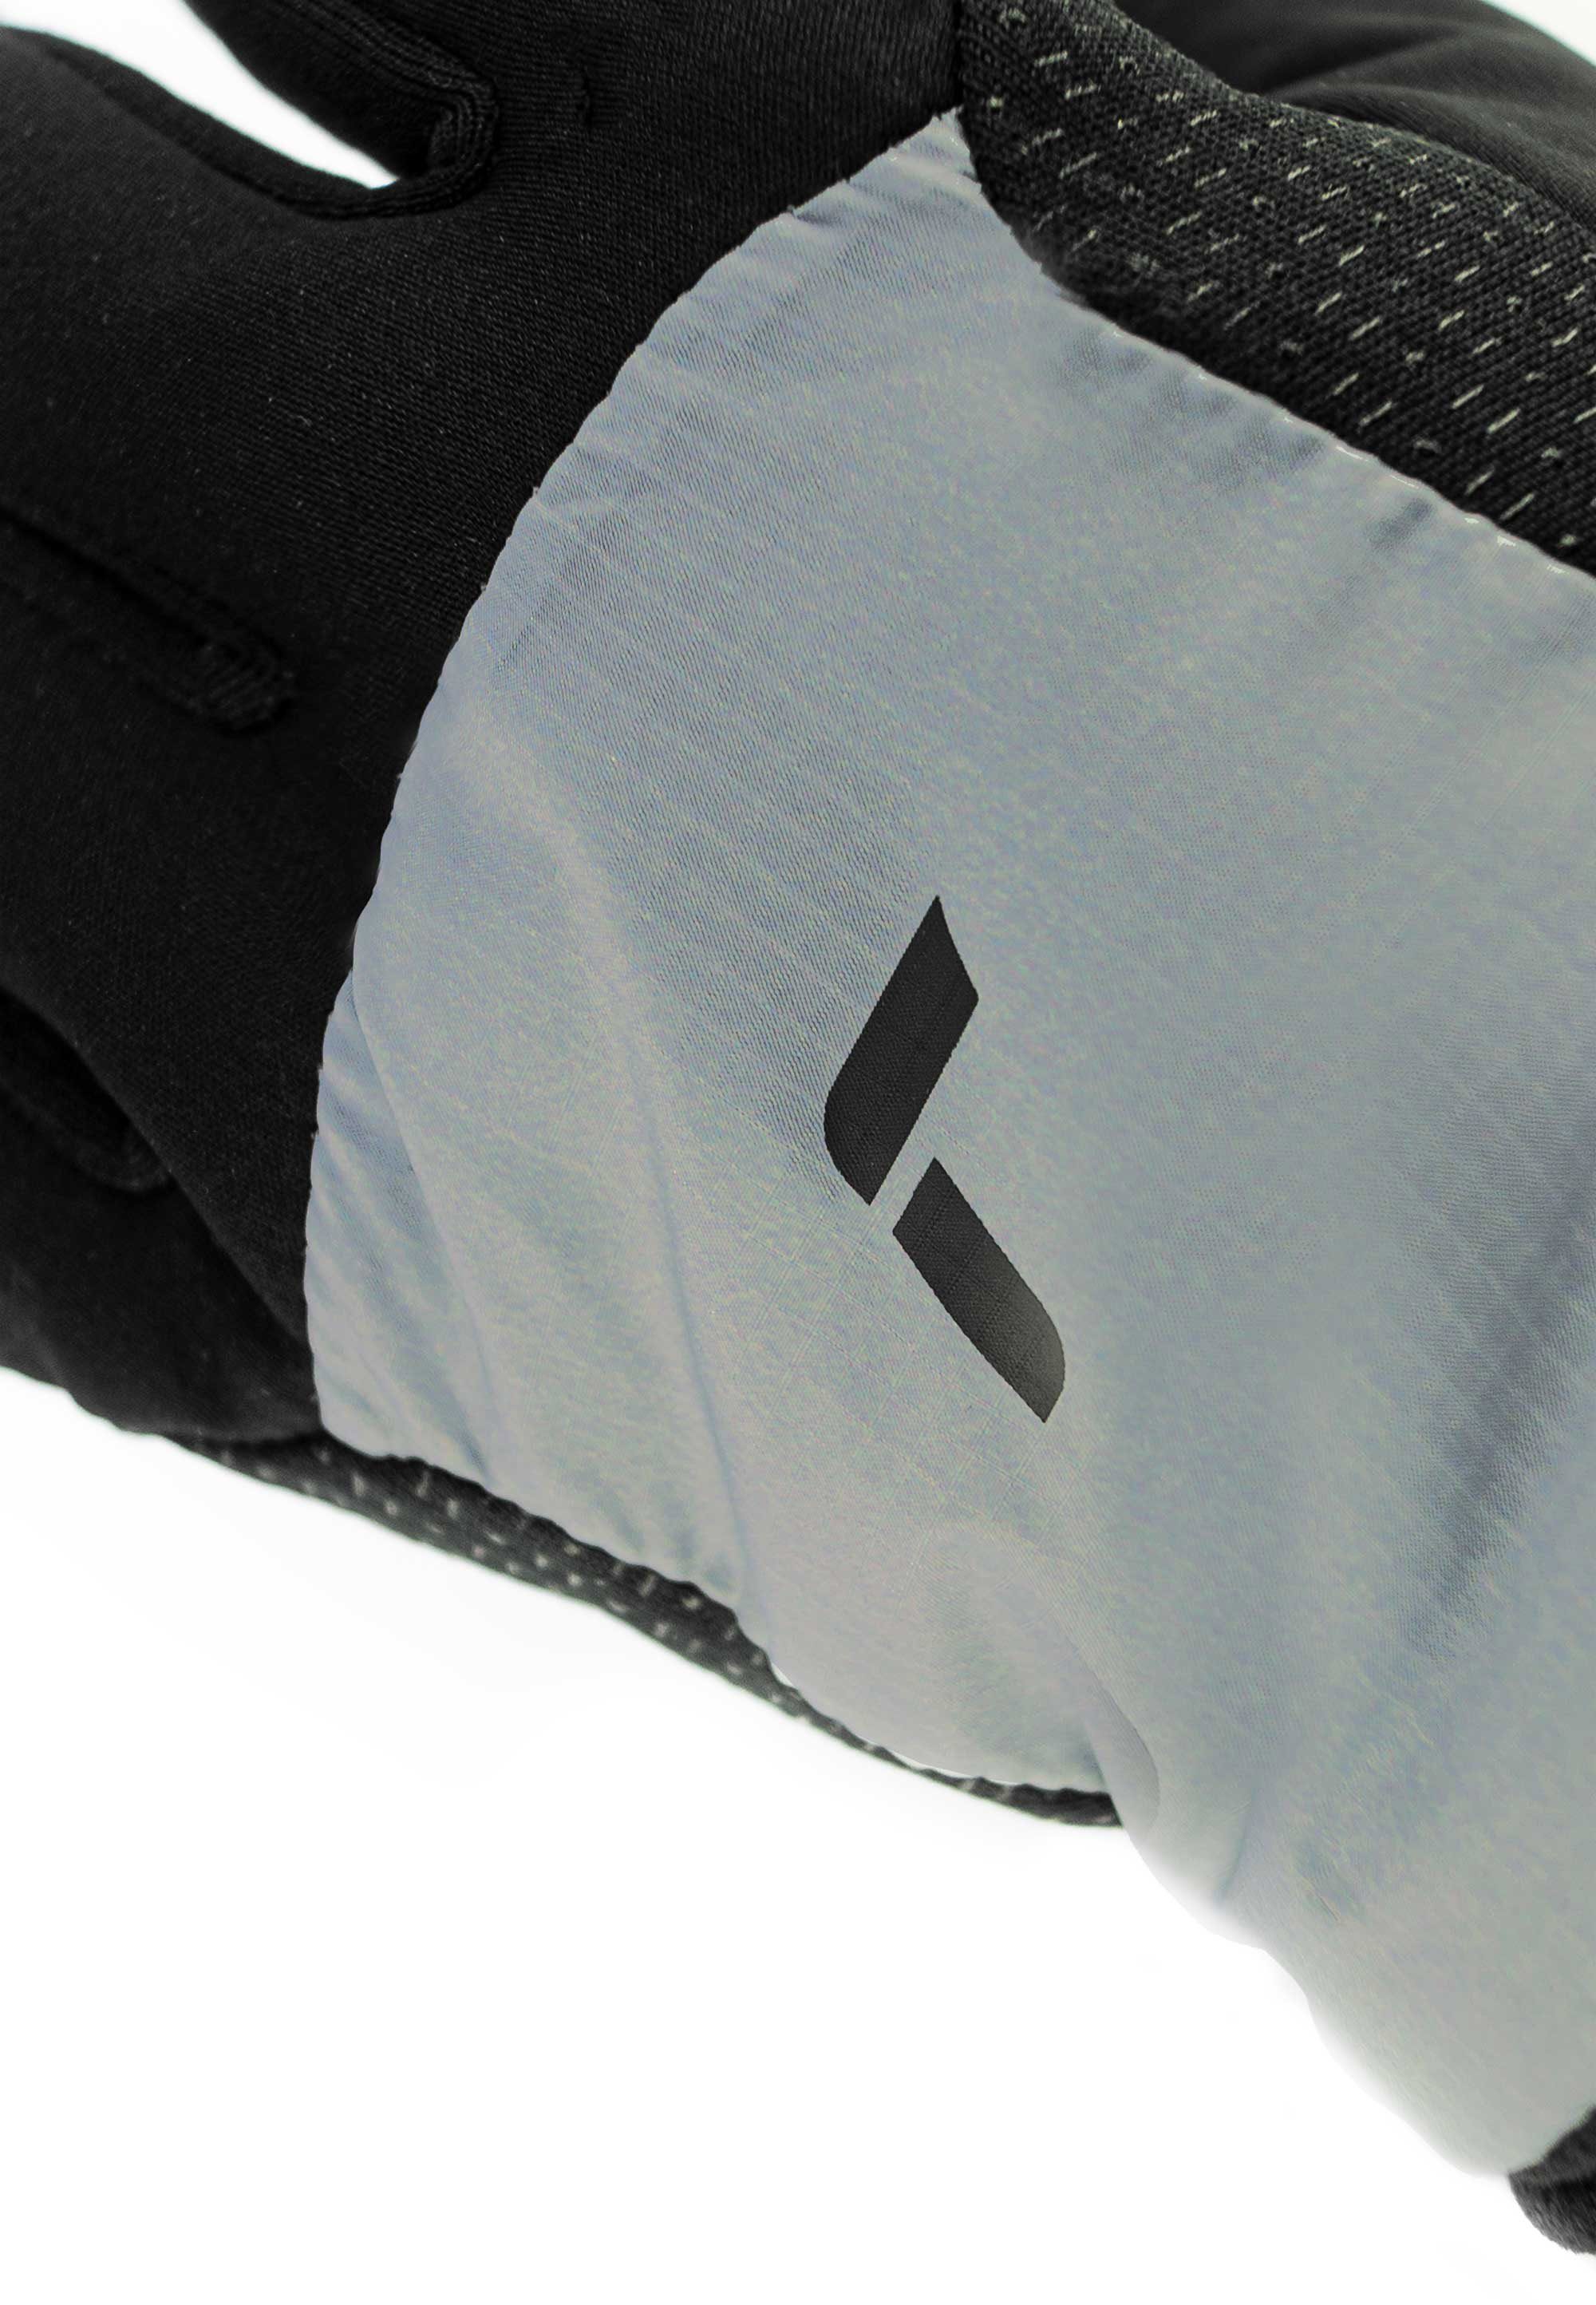 Reusch Skihandschuhe mit Hybrid grau-schwarz Touchscreen-Funktion praktischer Garhwal